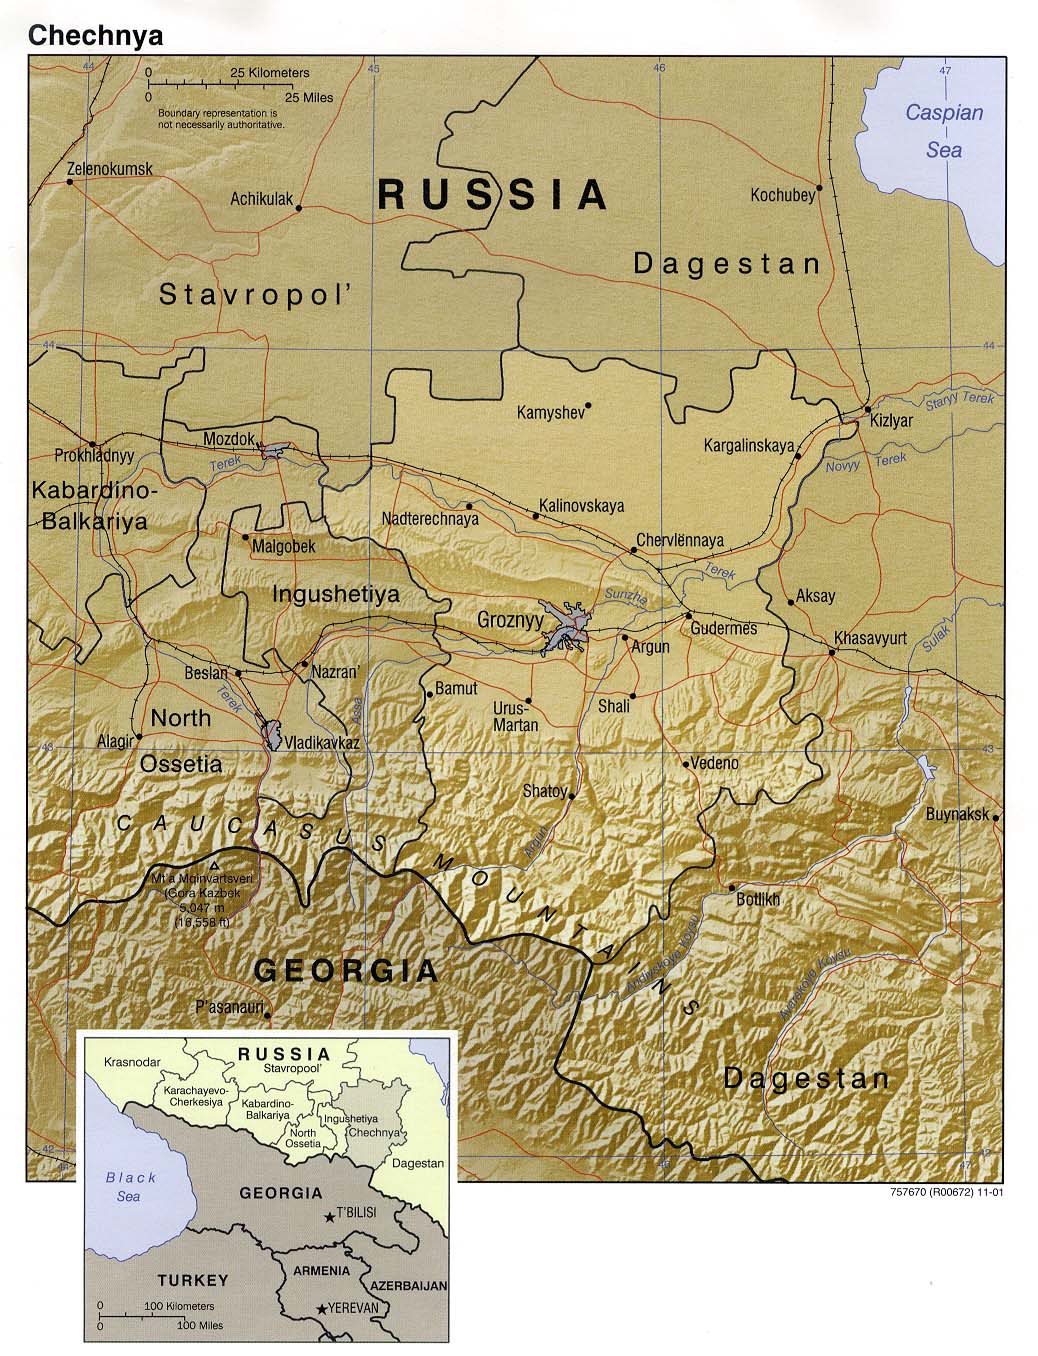 Mapa de Relieve Sombreado de Chechenia, Rusia